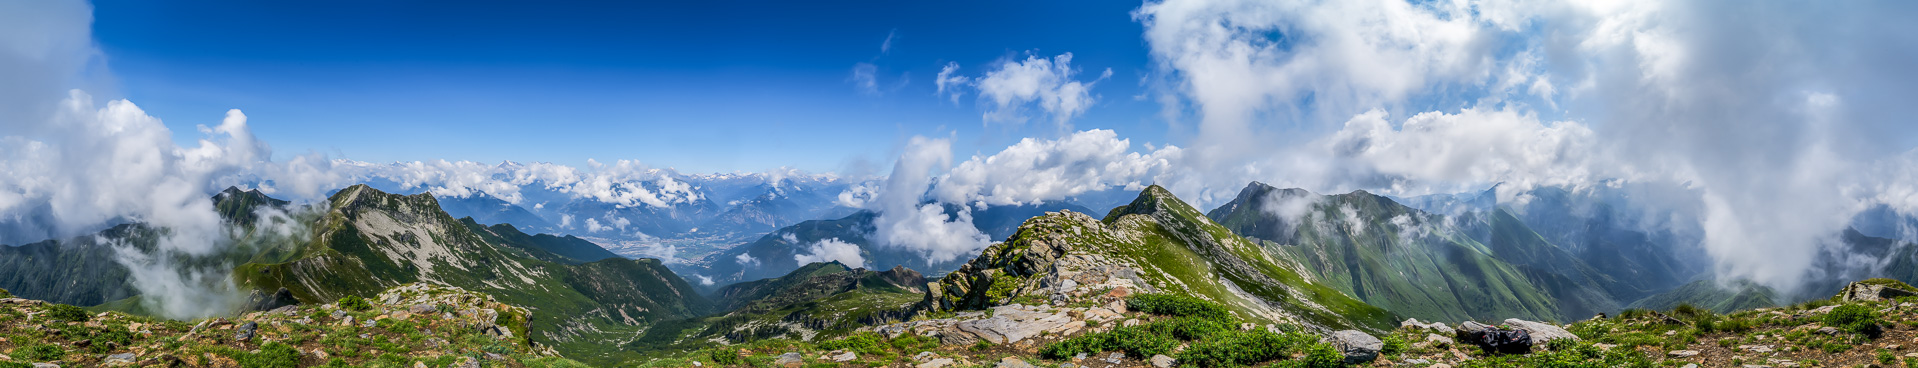 Der Hauptgipfel des Val Grande hüllt sich leider in Wolken - doch für ein schnelles Panorama hat es gerade noch gelangt.